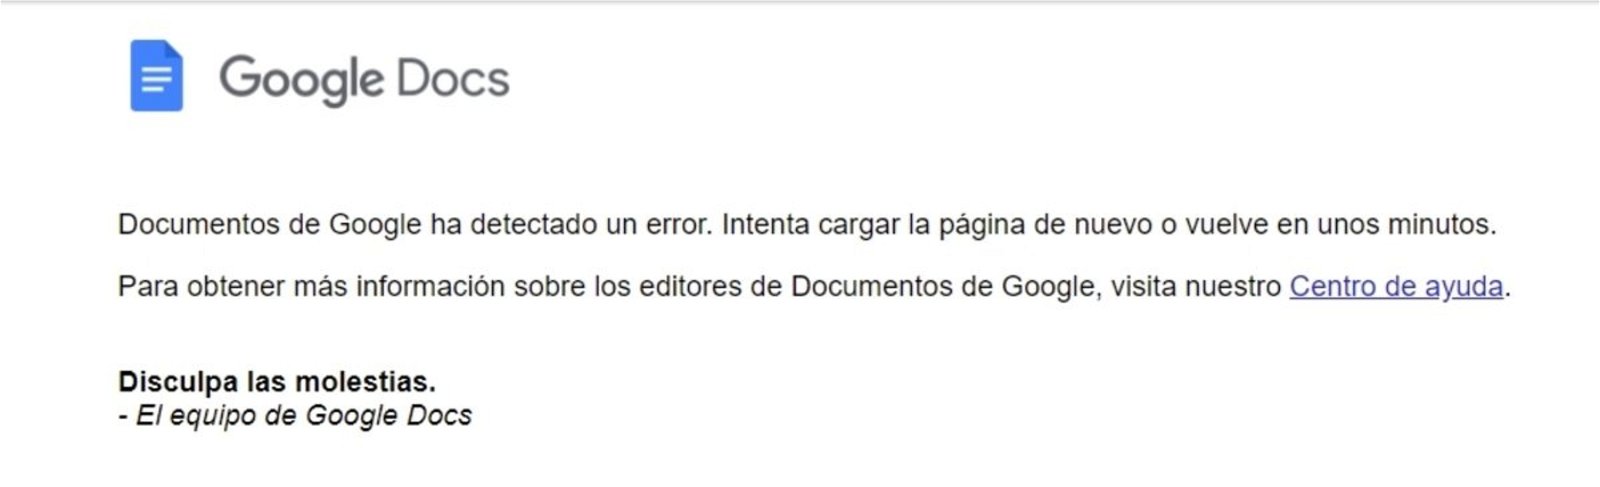 Error in Google Docs